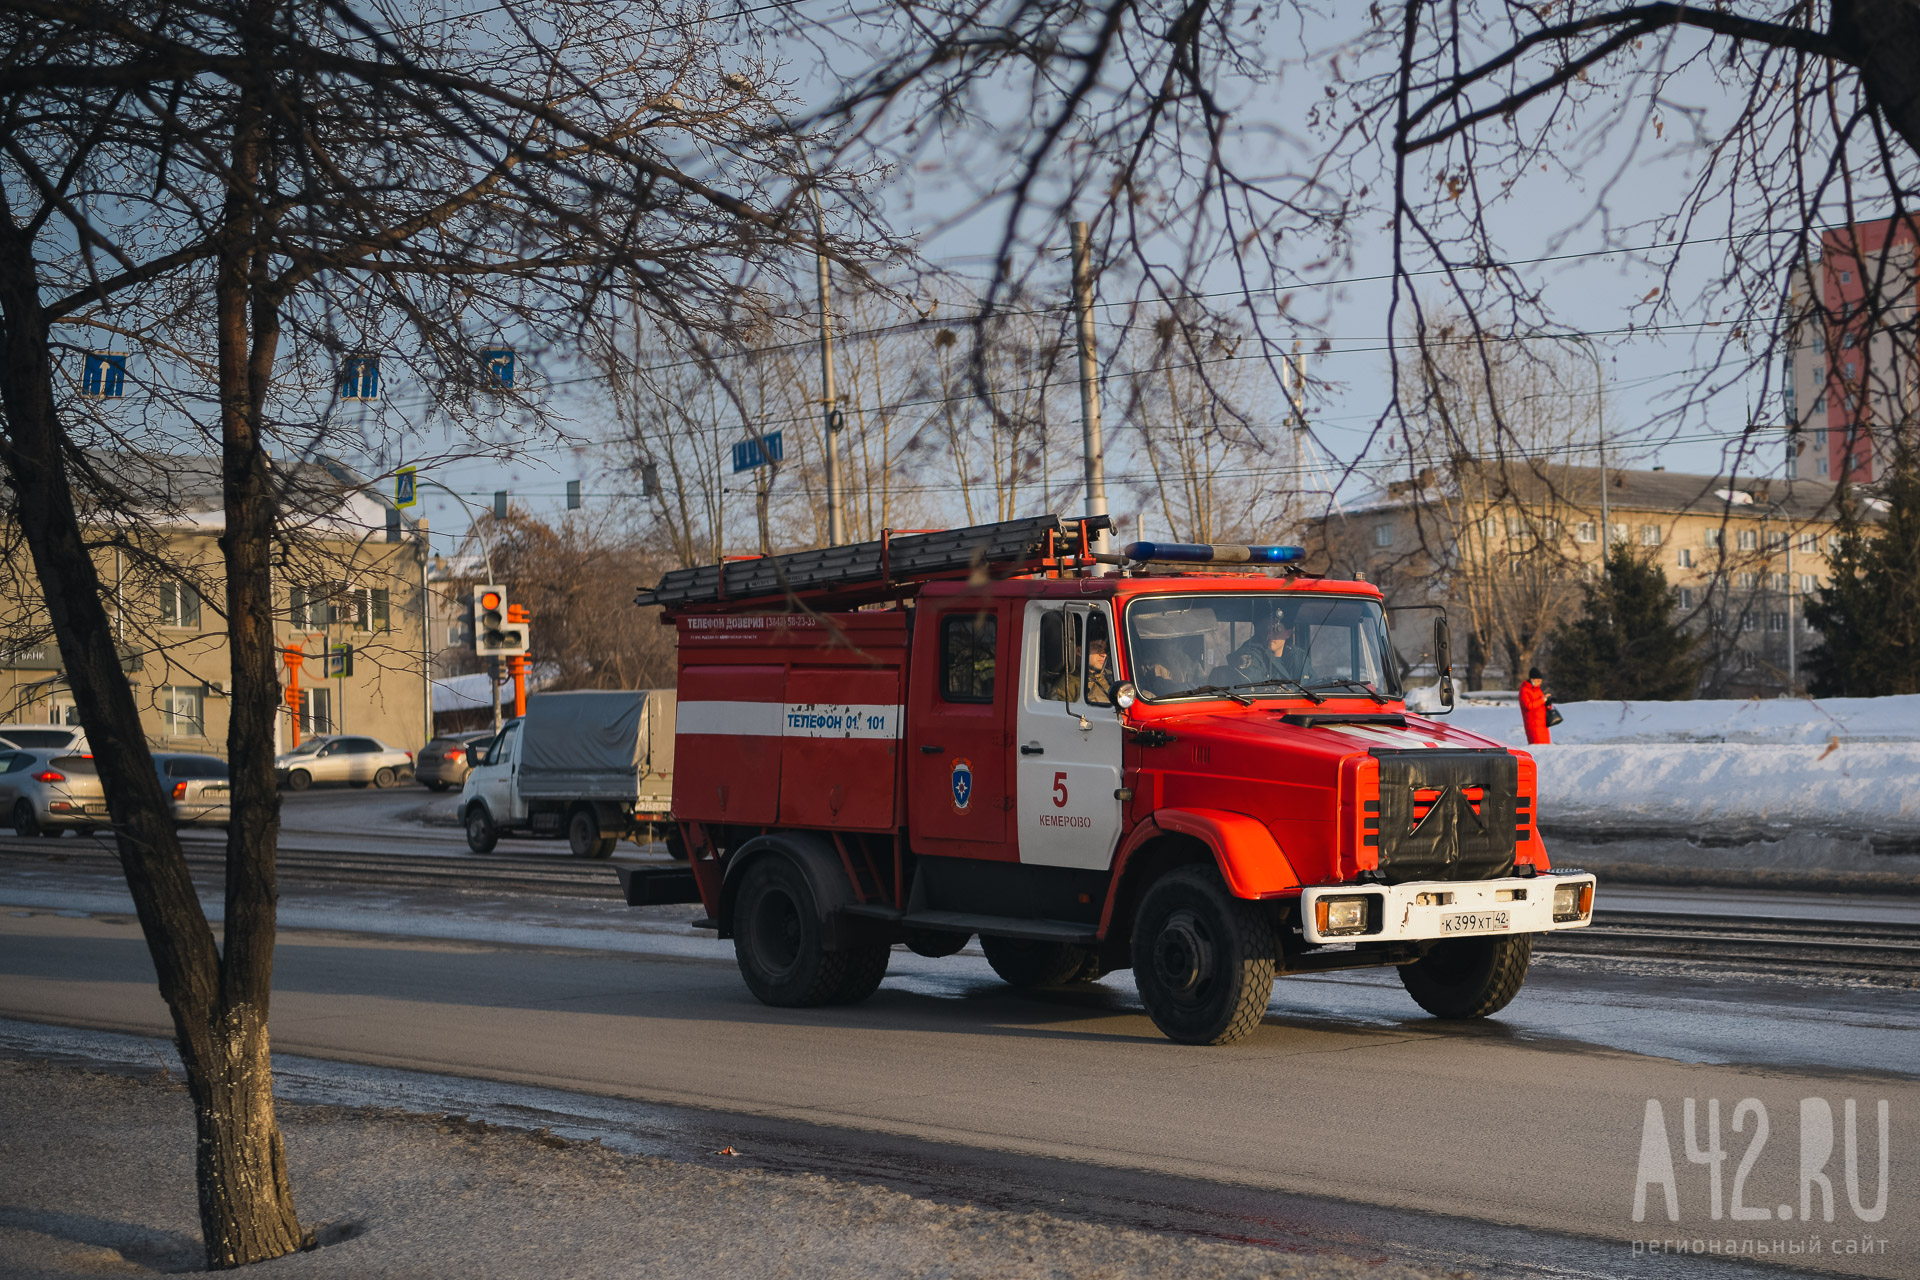 За сутки в Кузбассе произошло 10 пожаров